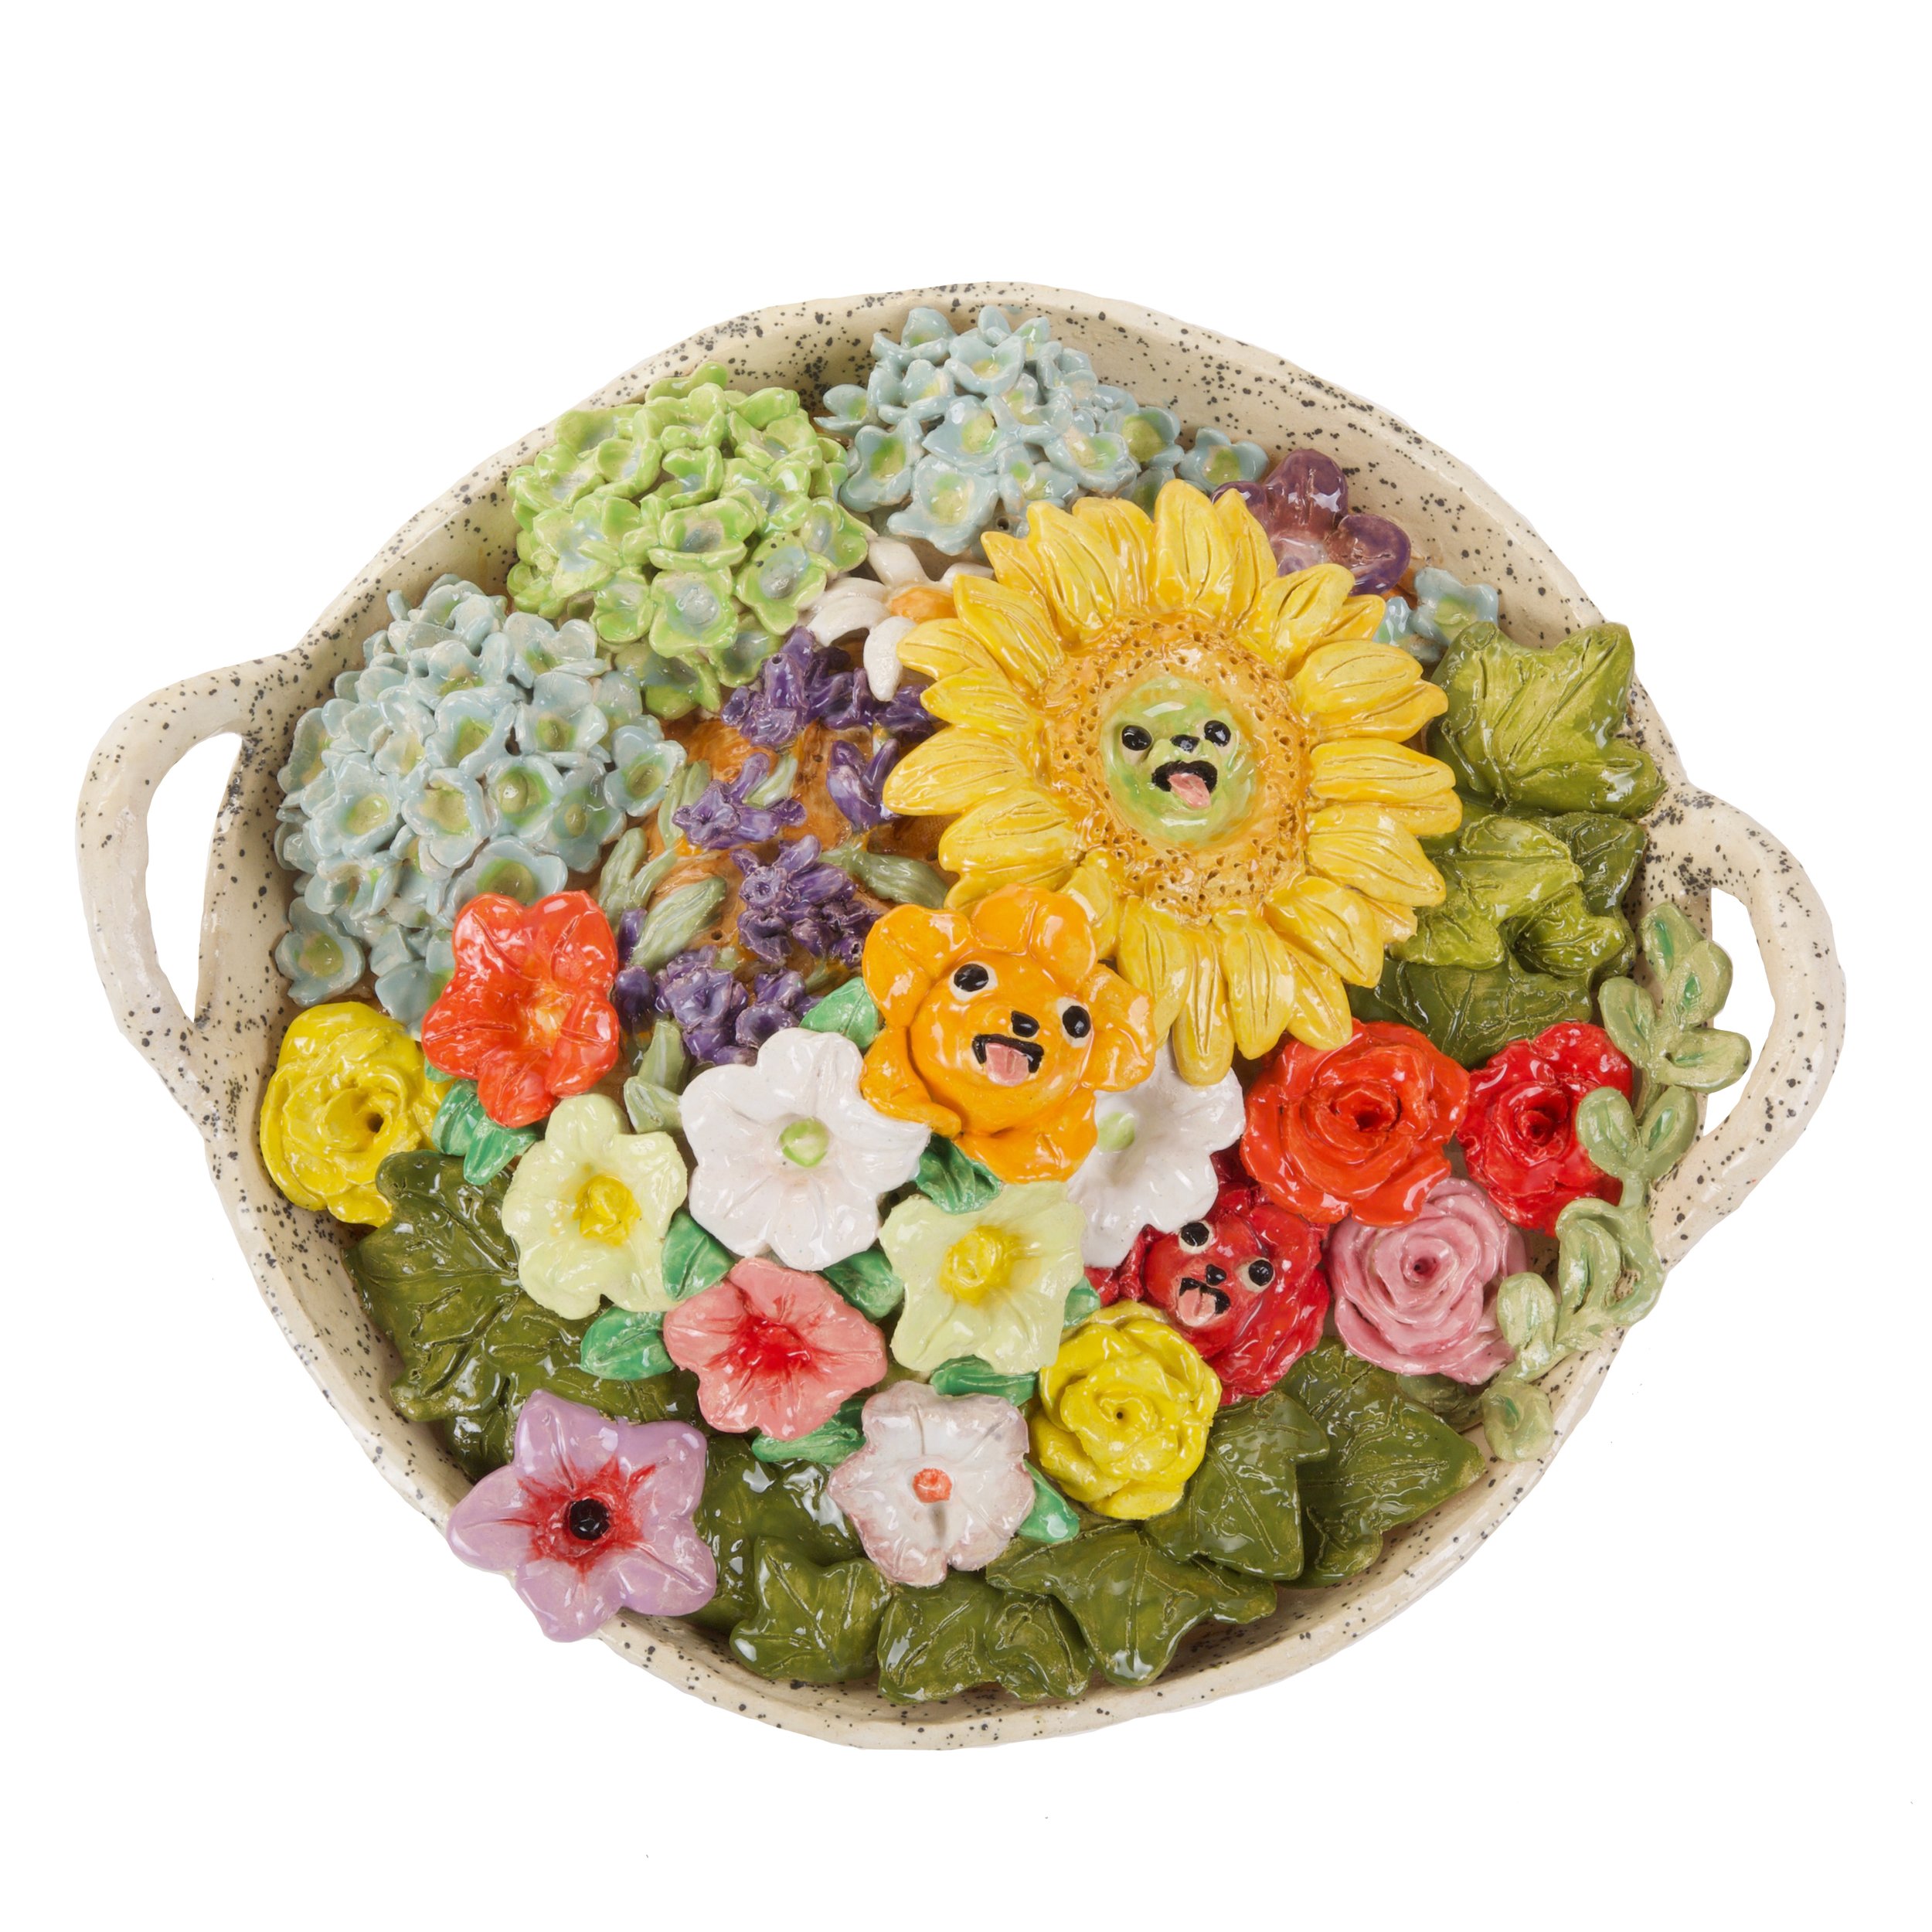 flowerbasket1.jpg